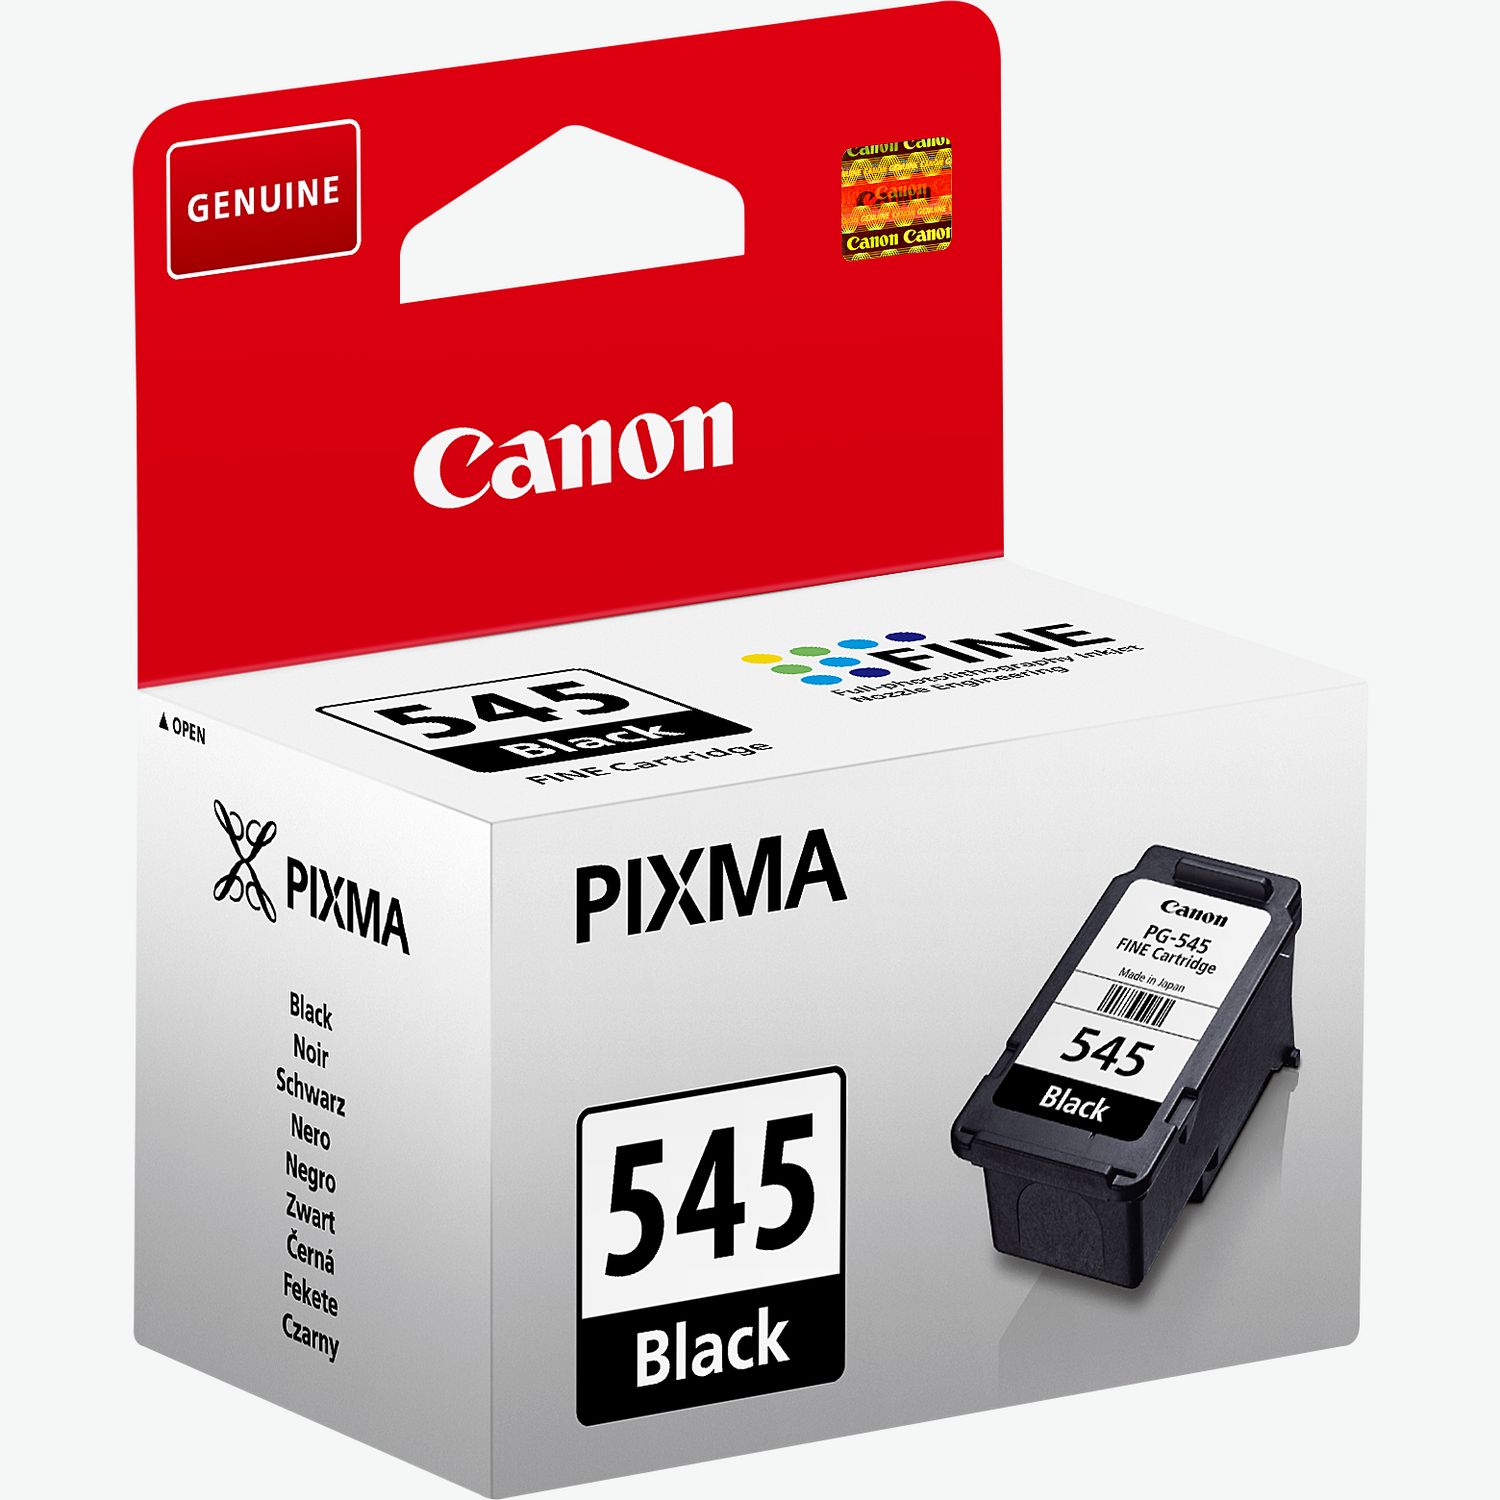 Canon PIXMA TR4651 Bianco - Stampante multifunzione - Garanzia 3 anni LDLC